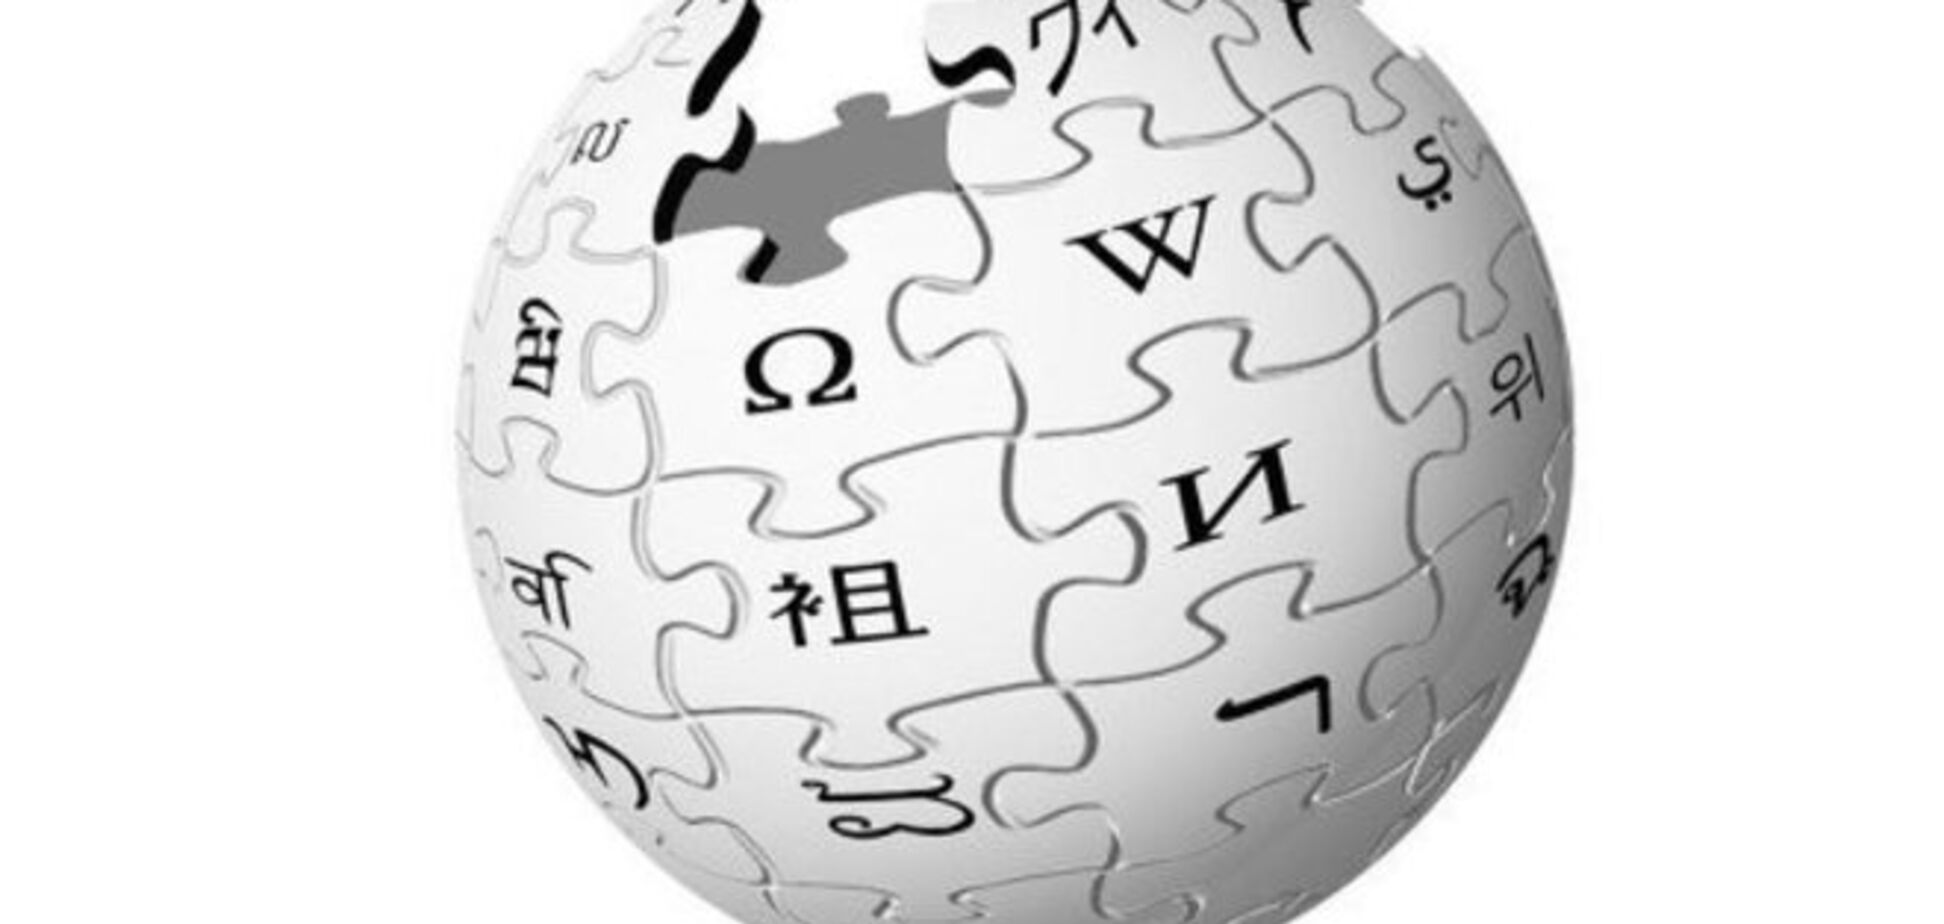 В Совете Федерации России выступили против запрета 'Википедии'